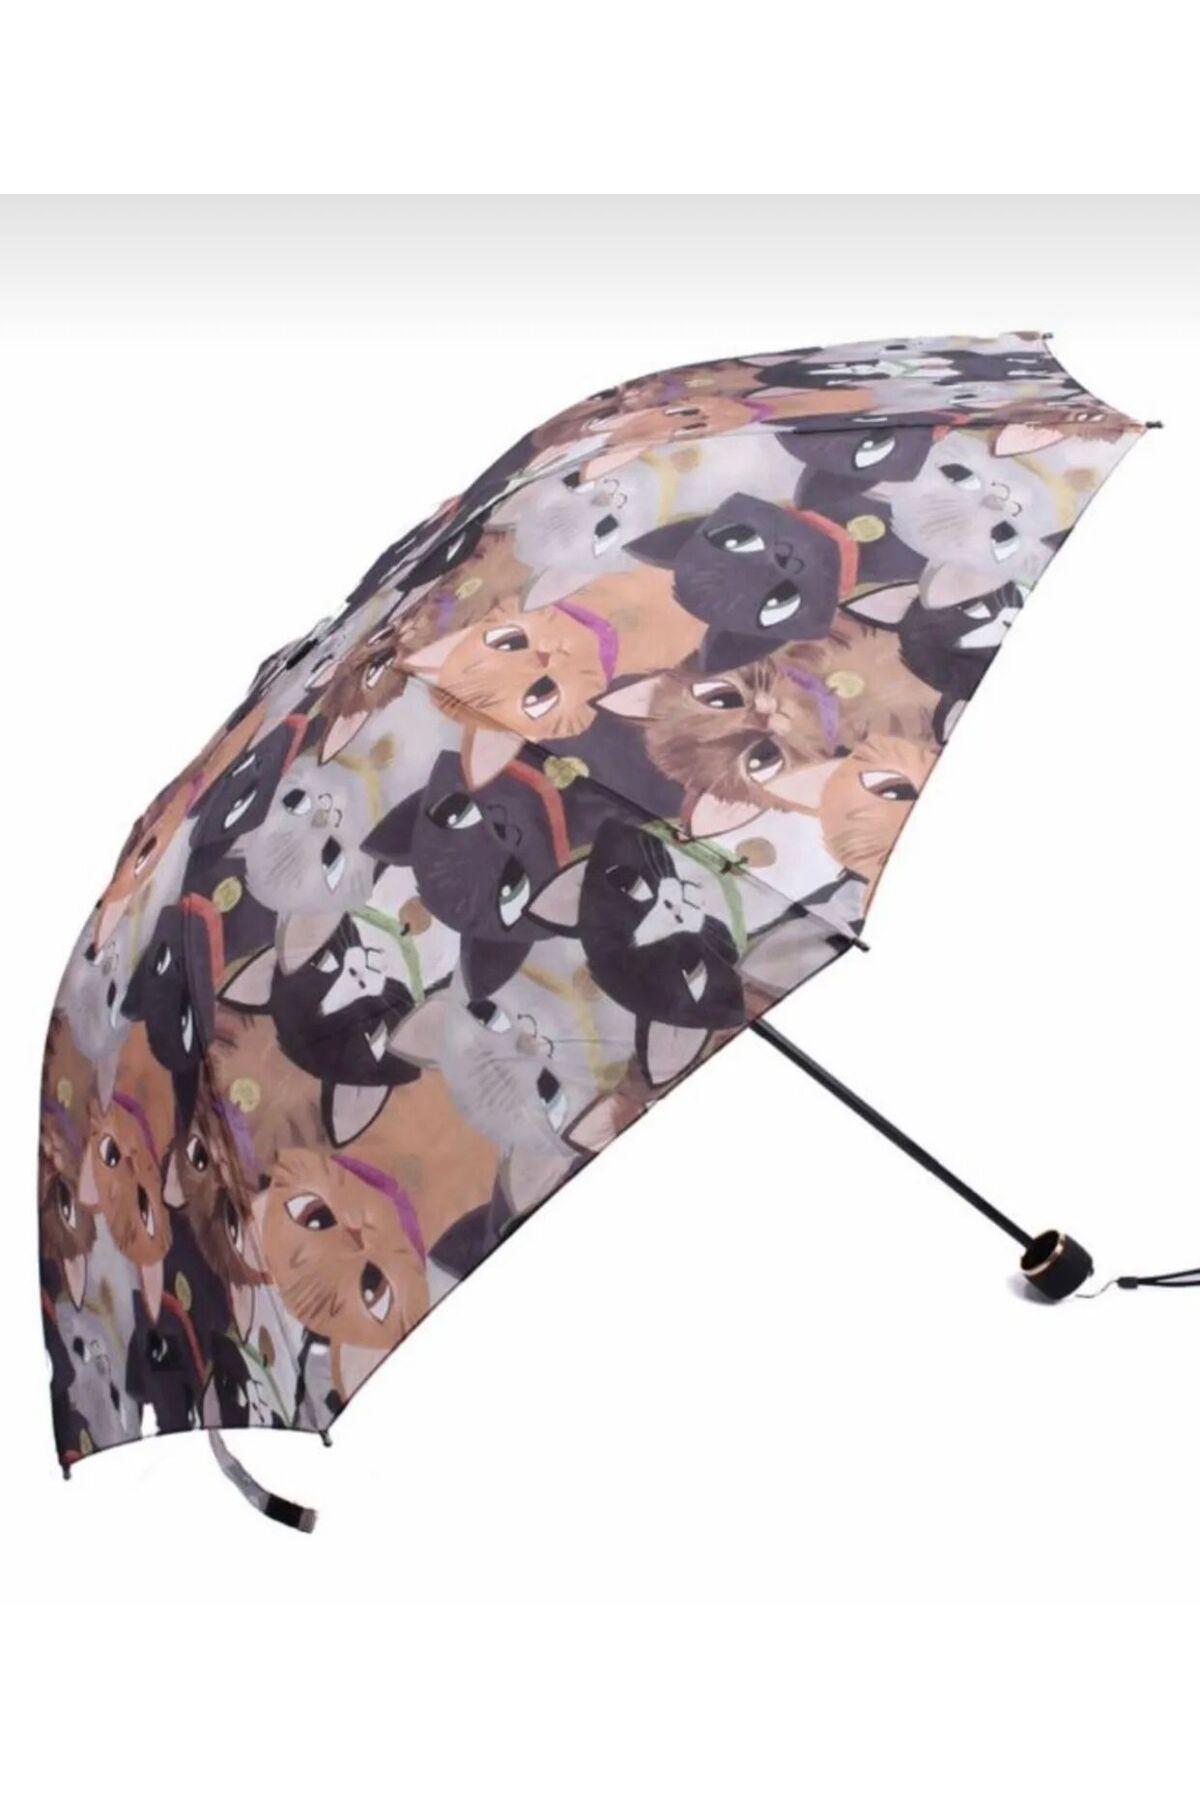 POLACOO Kedili Şemsiye Yarasa Tip Katlamalı Manul 8 Tel Rüzgarda Kırılmaz Şemsiye Unisex Şemsiye